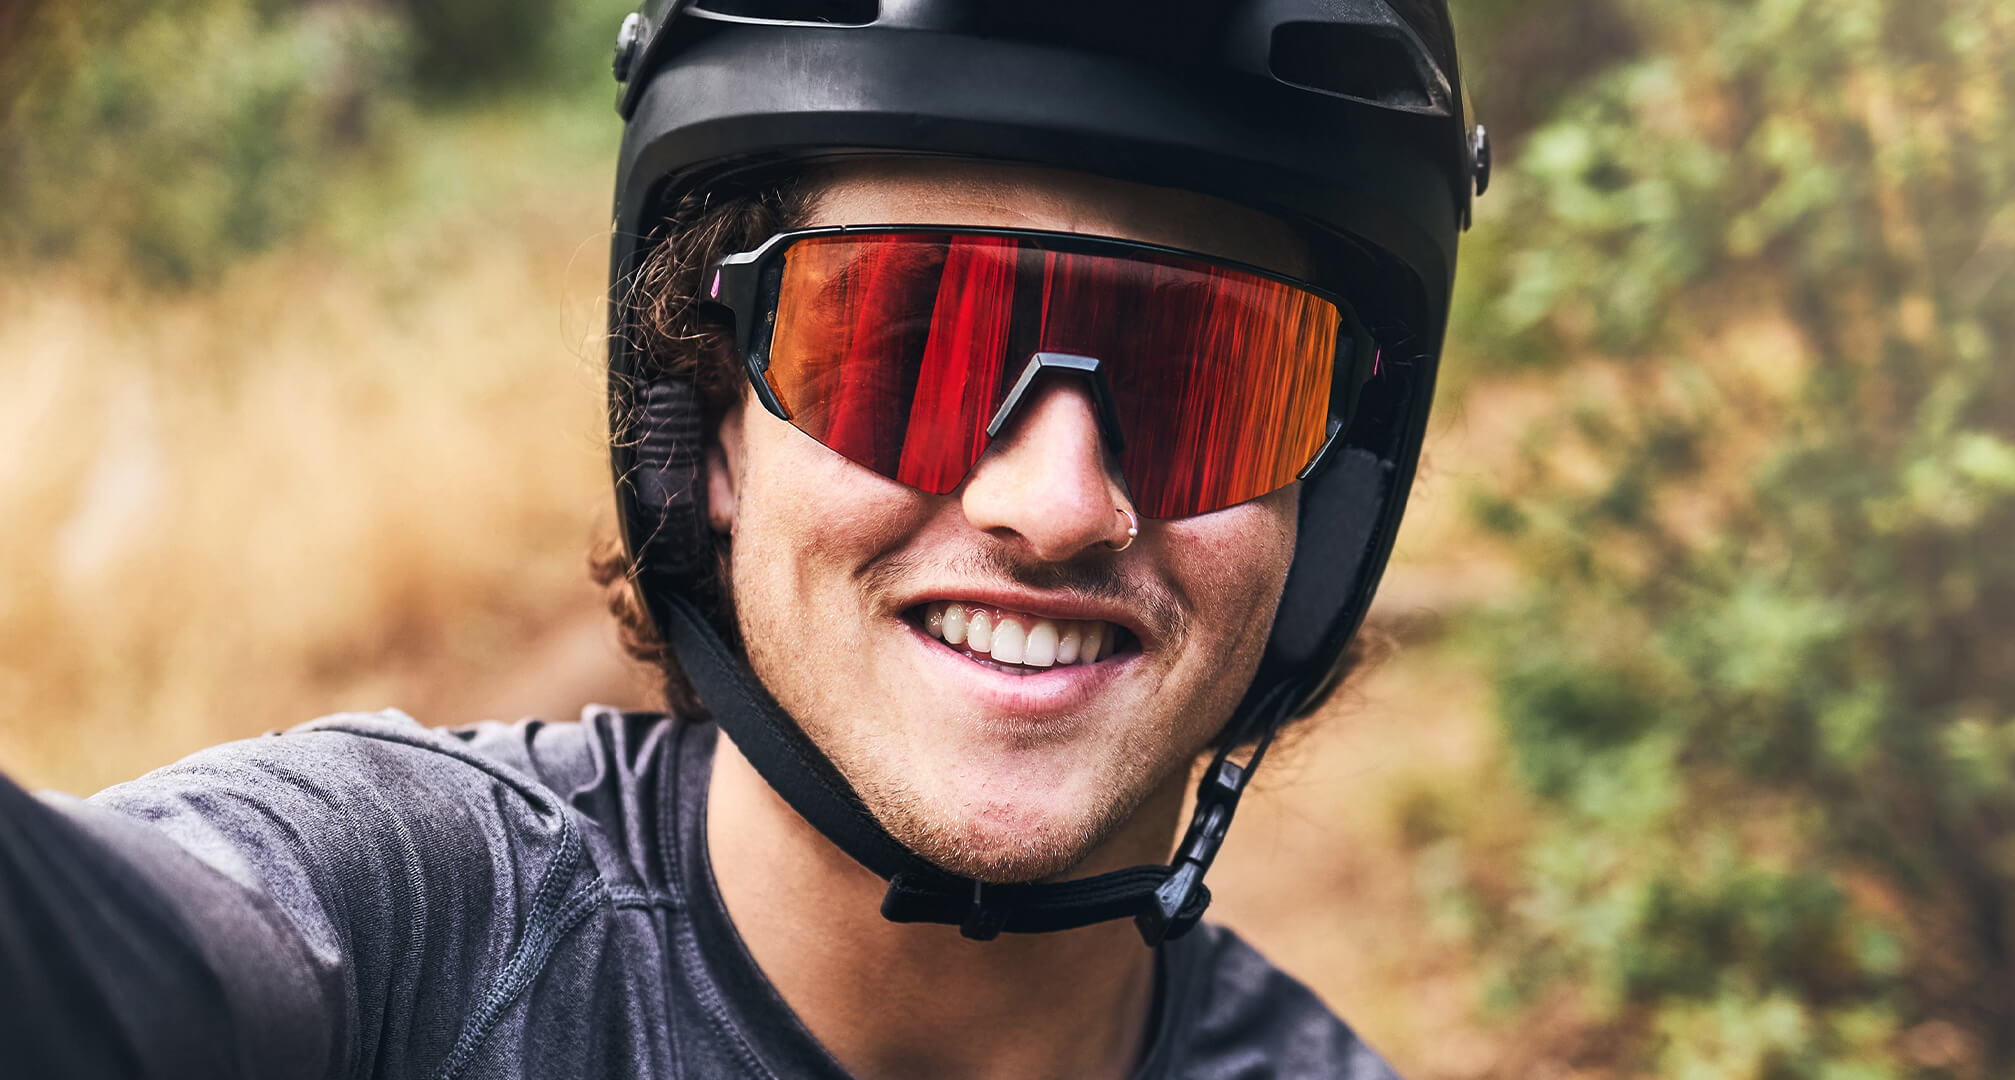 Nahaufnahme einer Person mit Fahrradhelm und Sonnenbrille